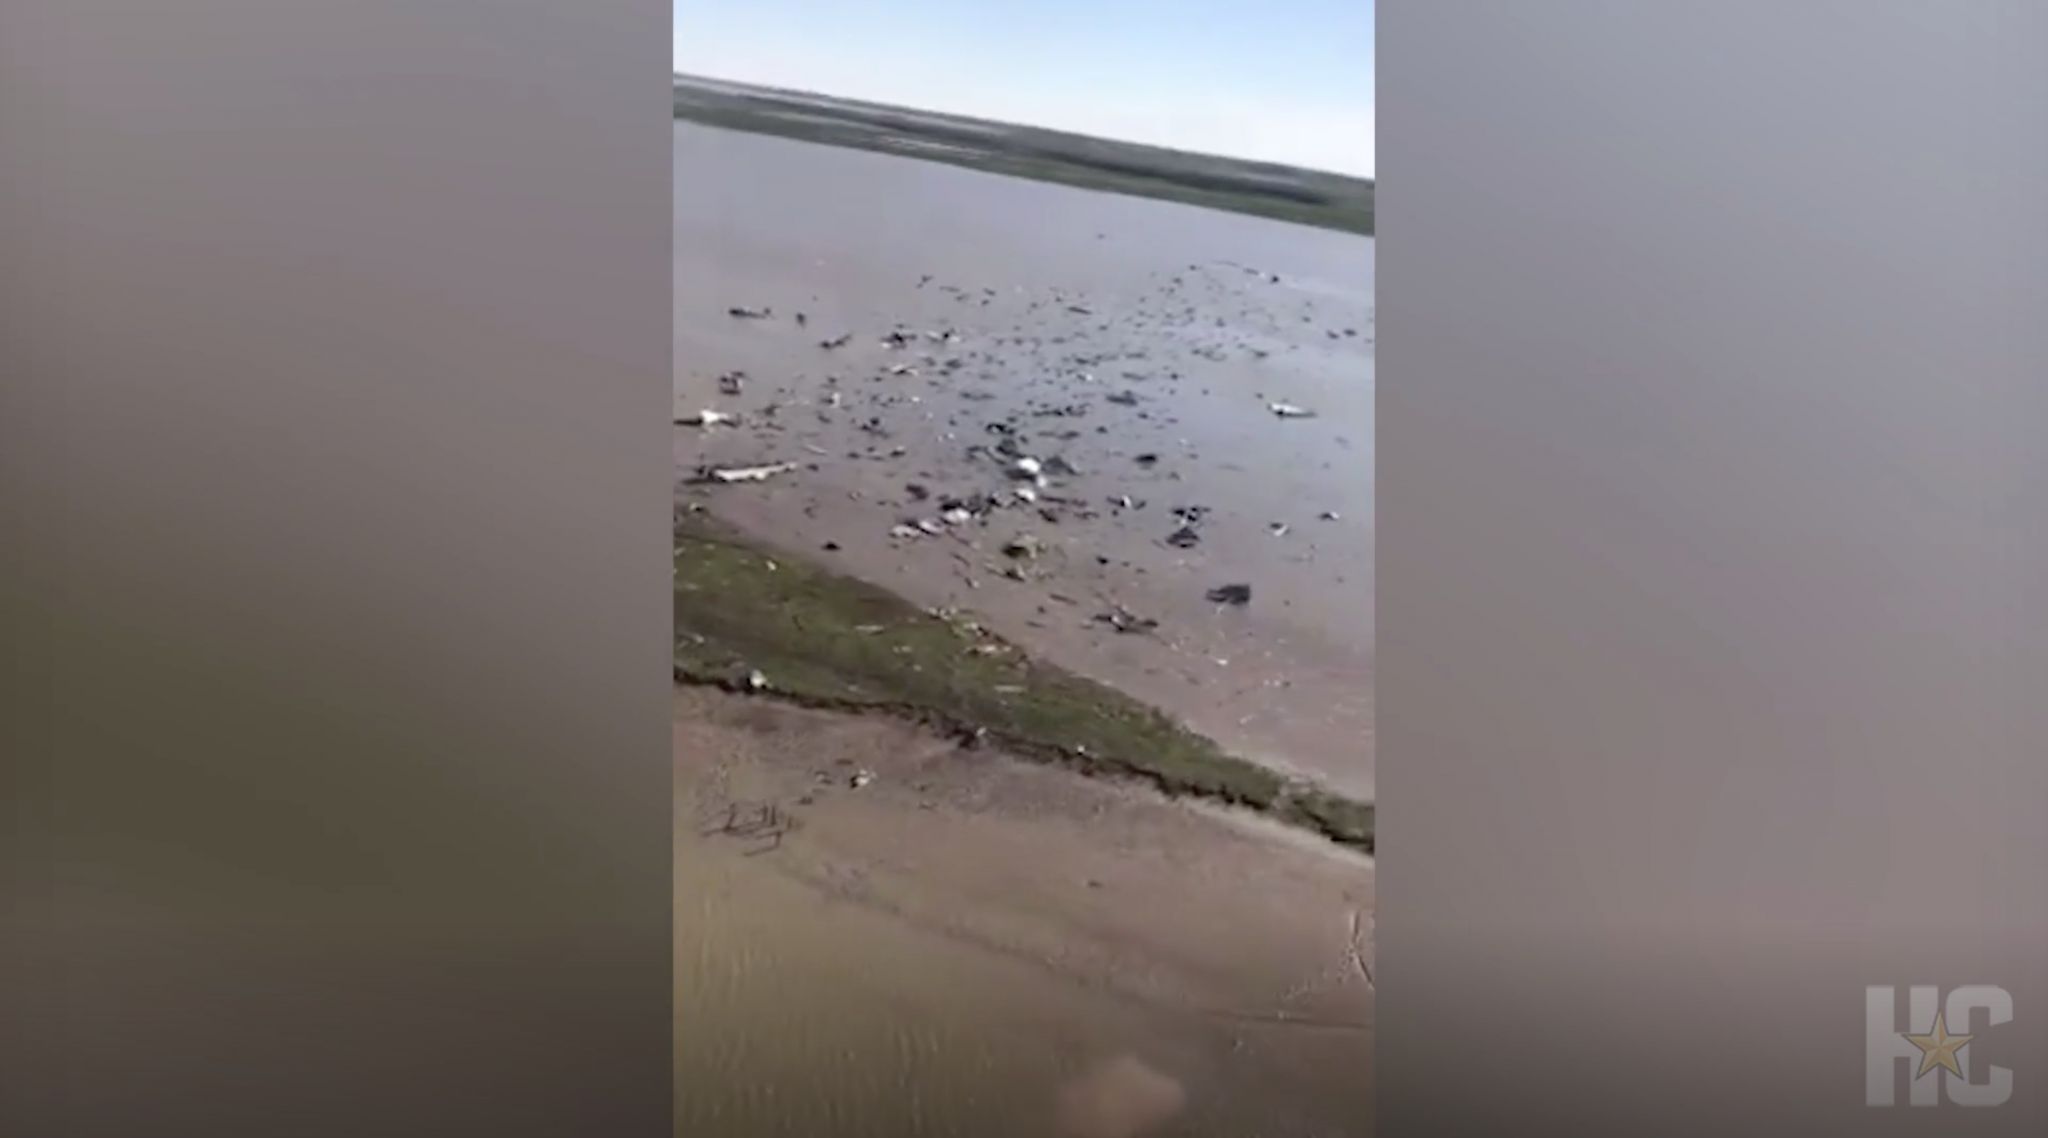 Video shows massive debris field in Amazon plane crash near Anahuac